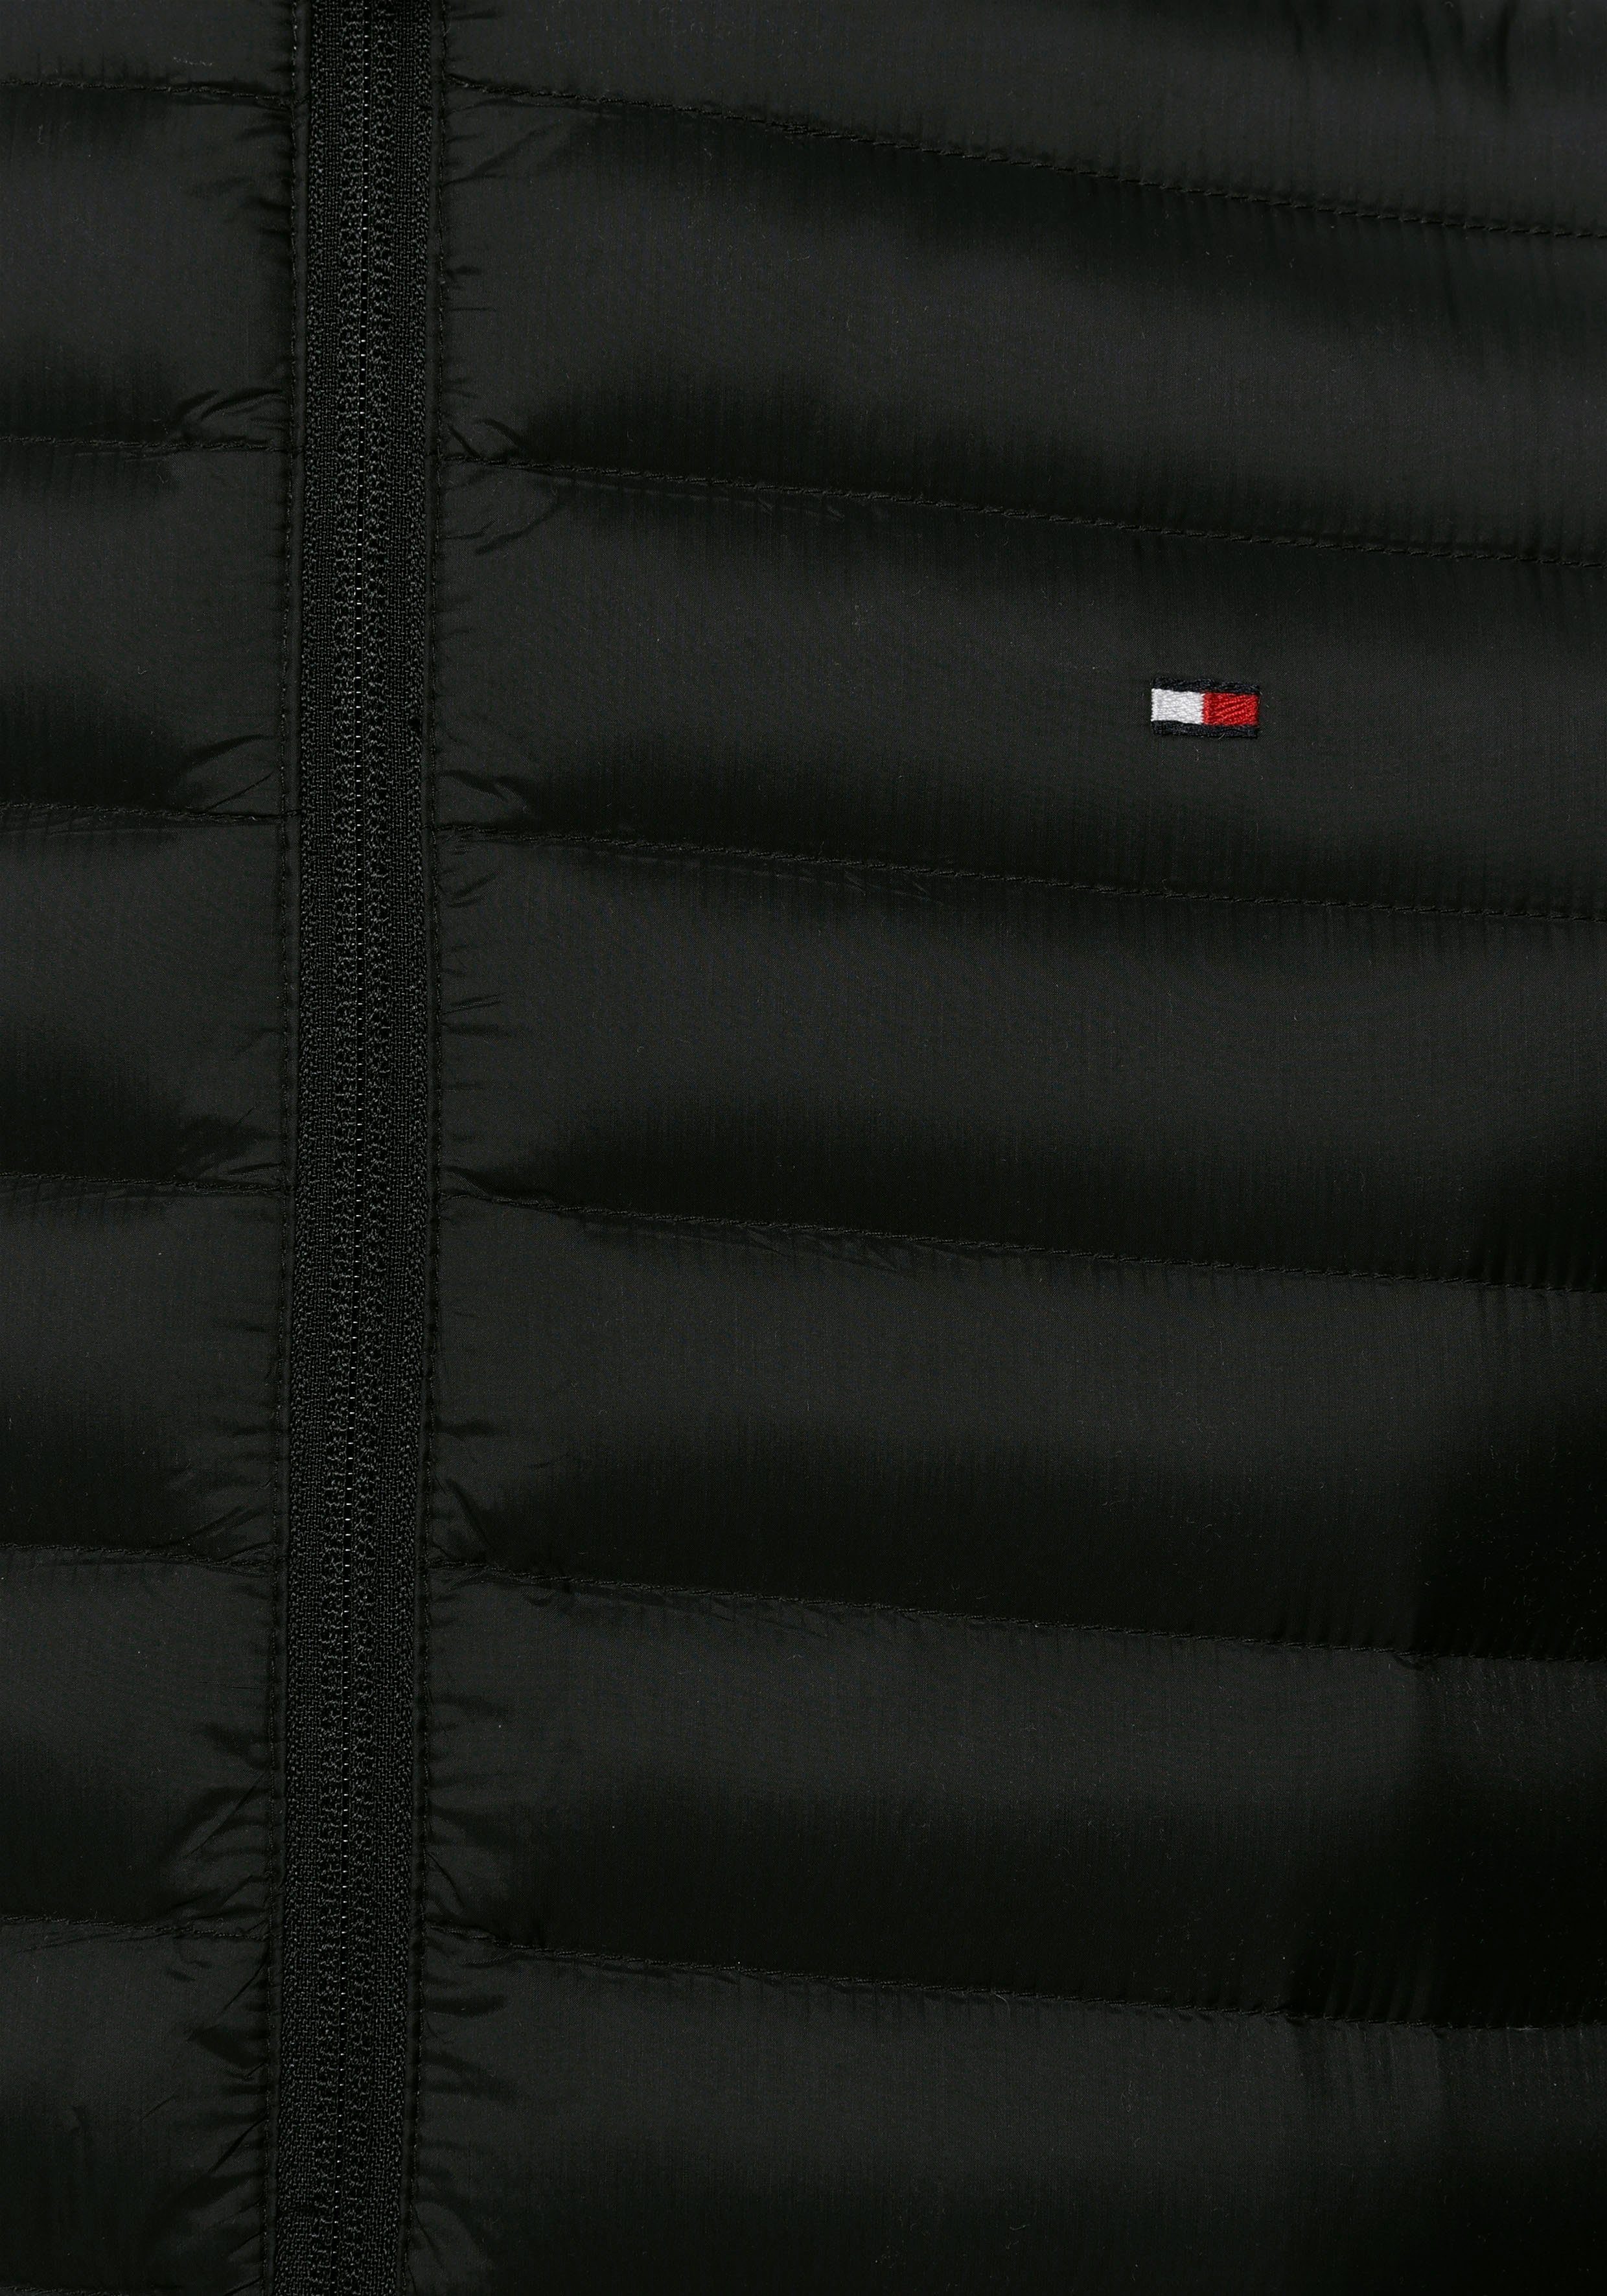 Hilfiger Core jet black Steppweste Packable Down Tommy Vest